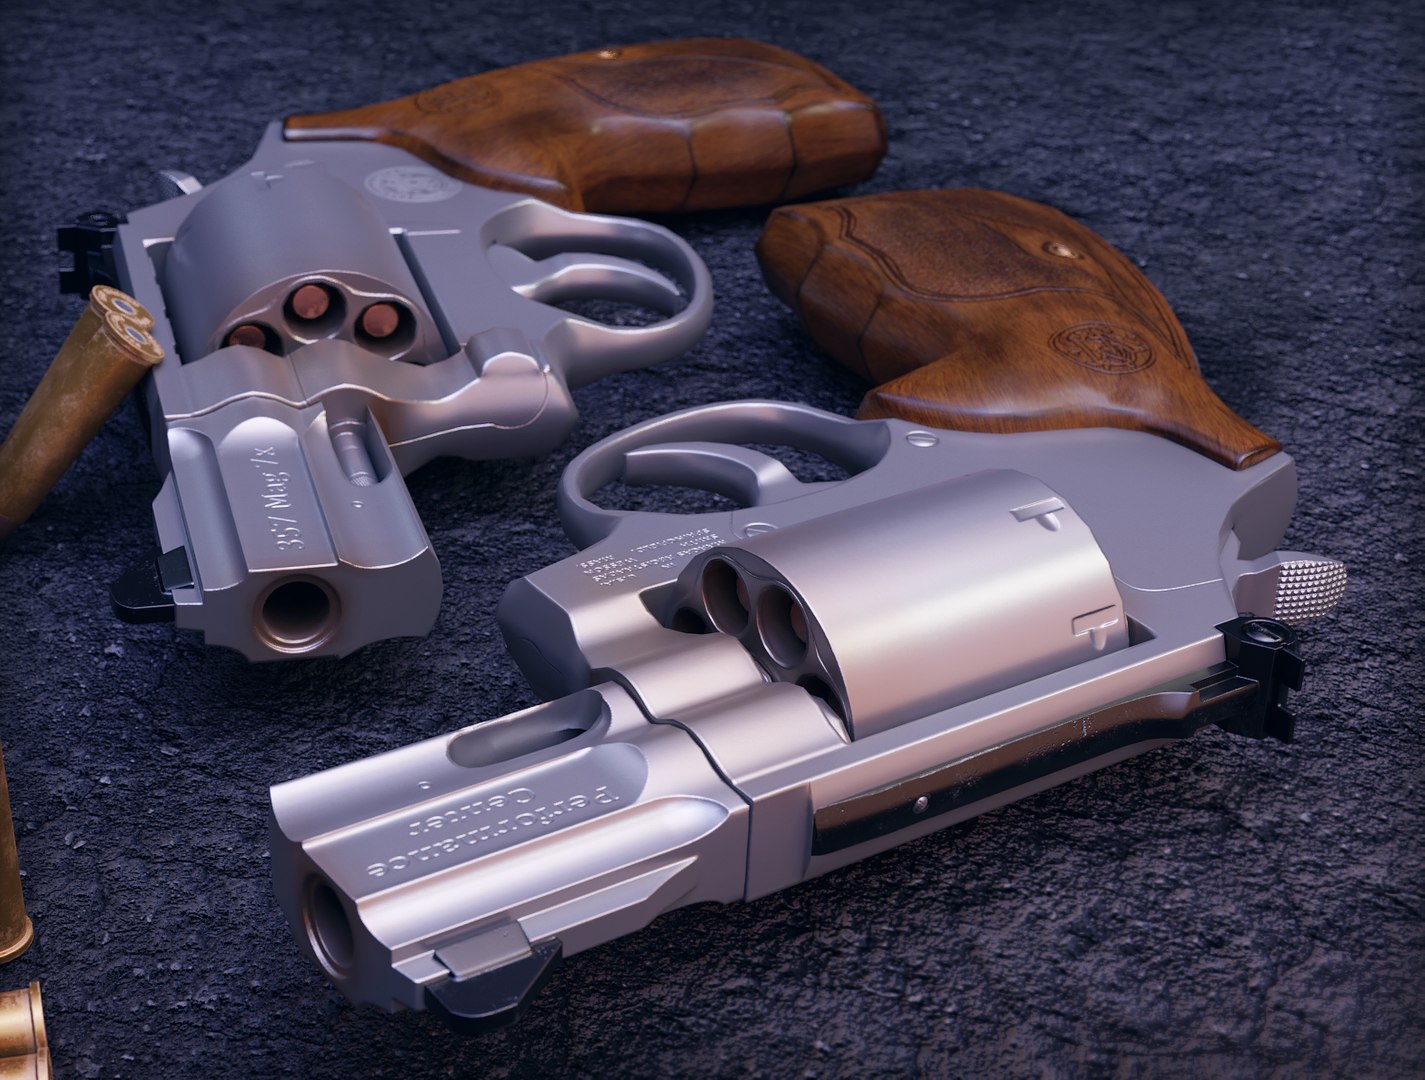 357 Magnum Modelo 3D - TurboSquid 1316831